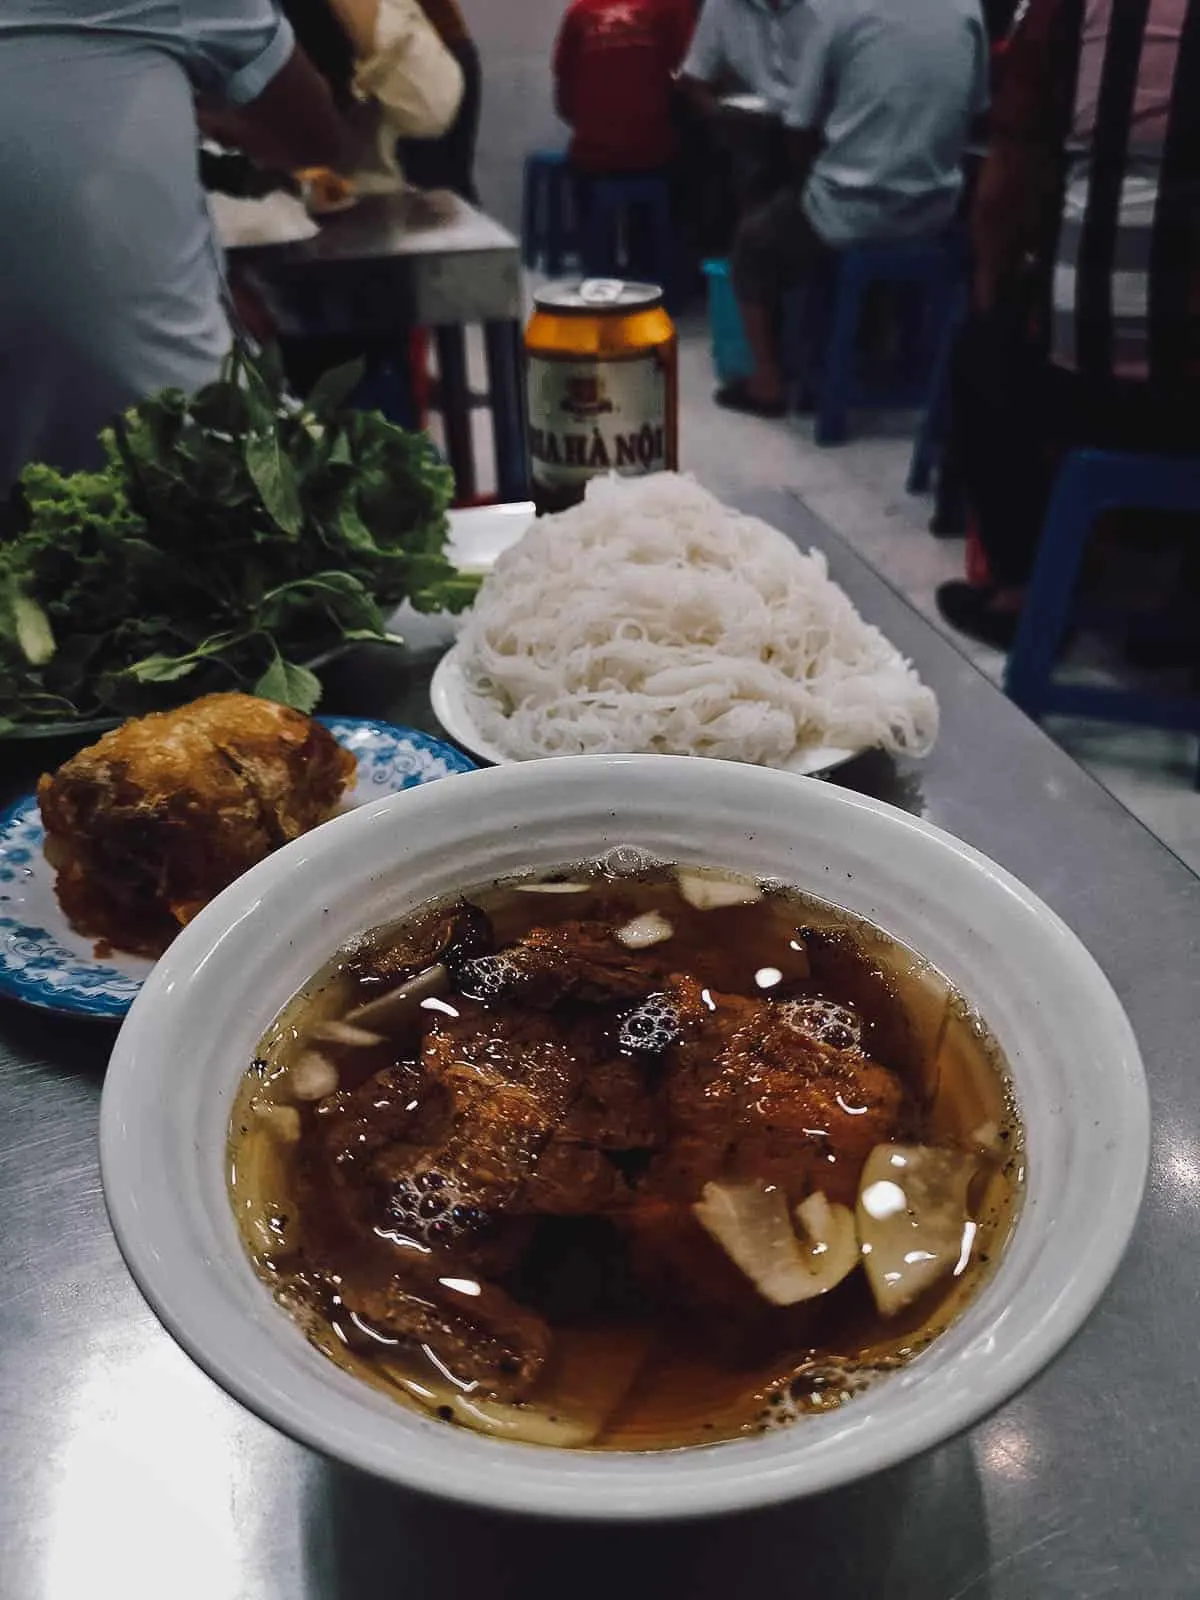 Bun cha at Bún chả Hương Liên restaurant in Hanoi